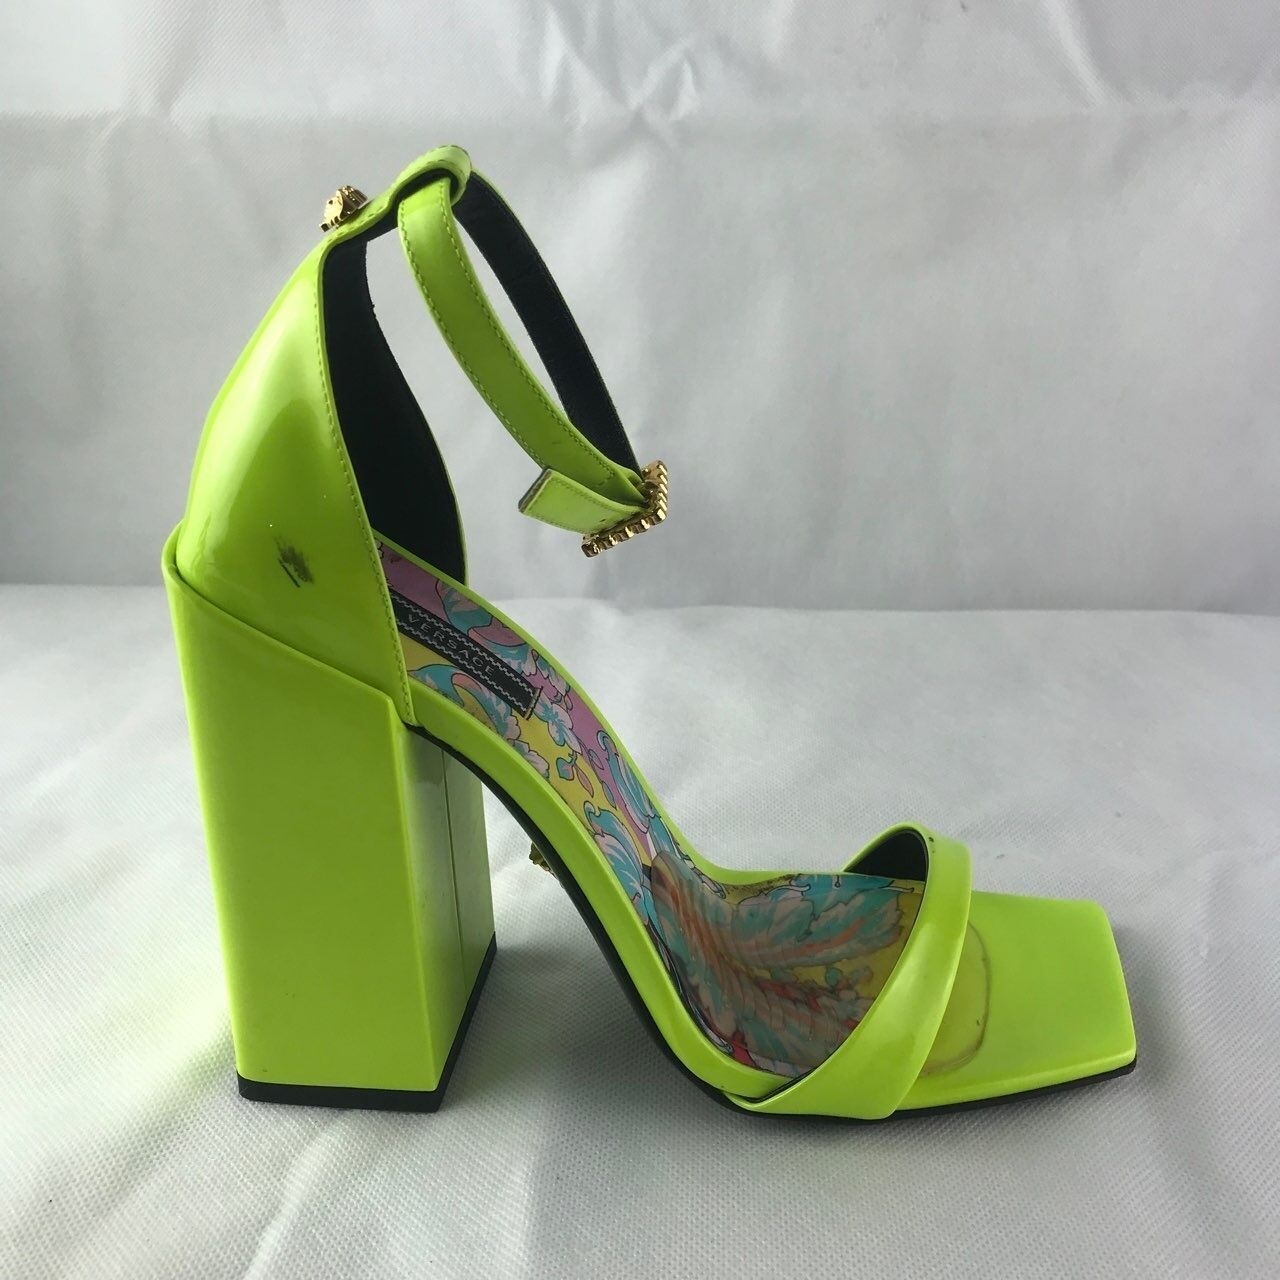 Versace Neon Yellow Heels